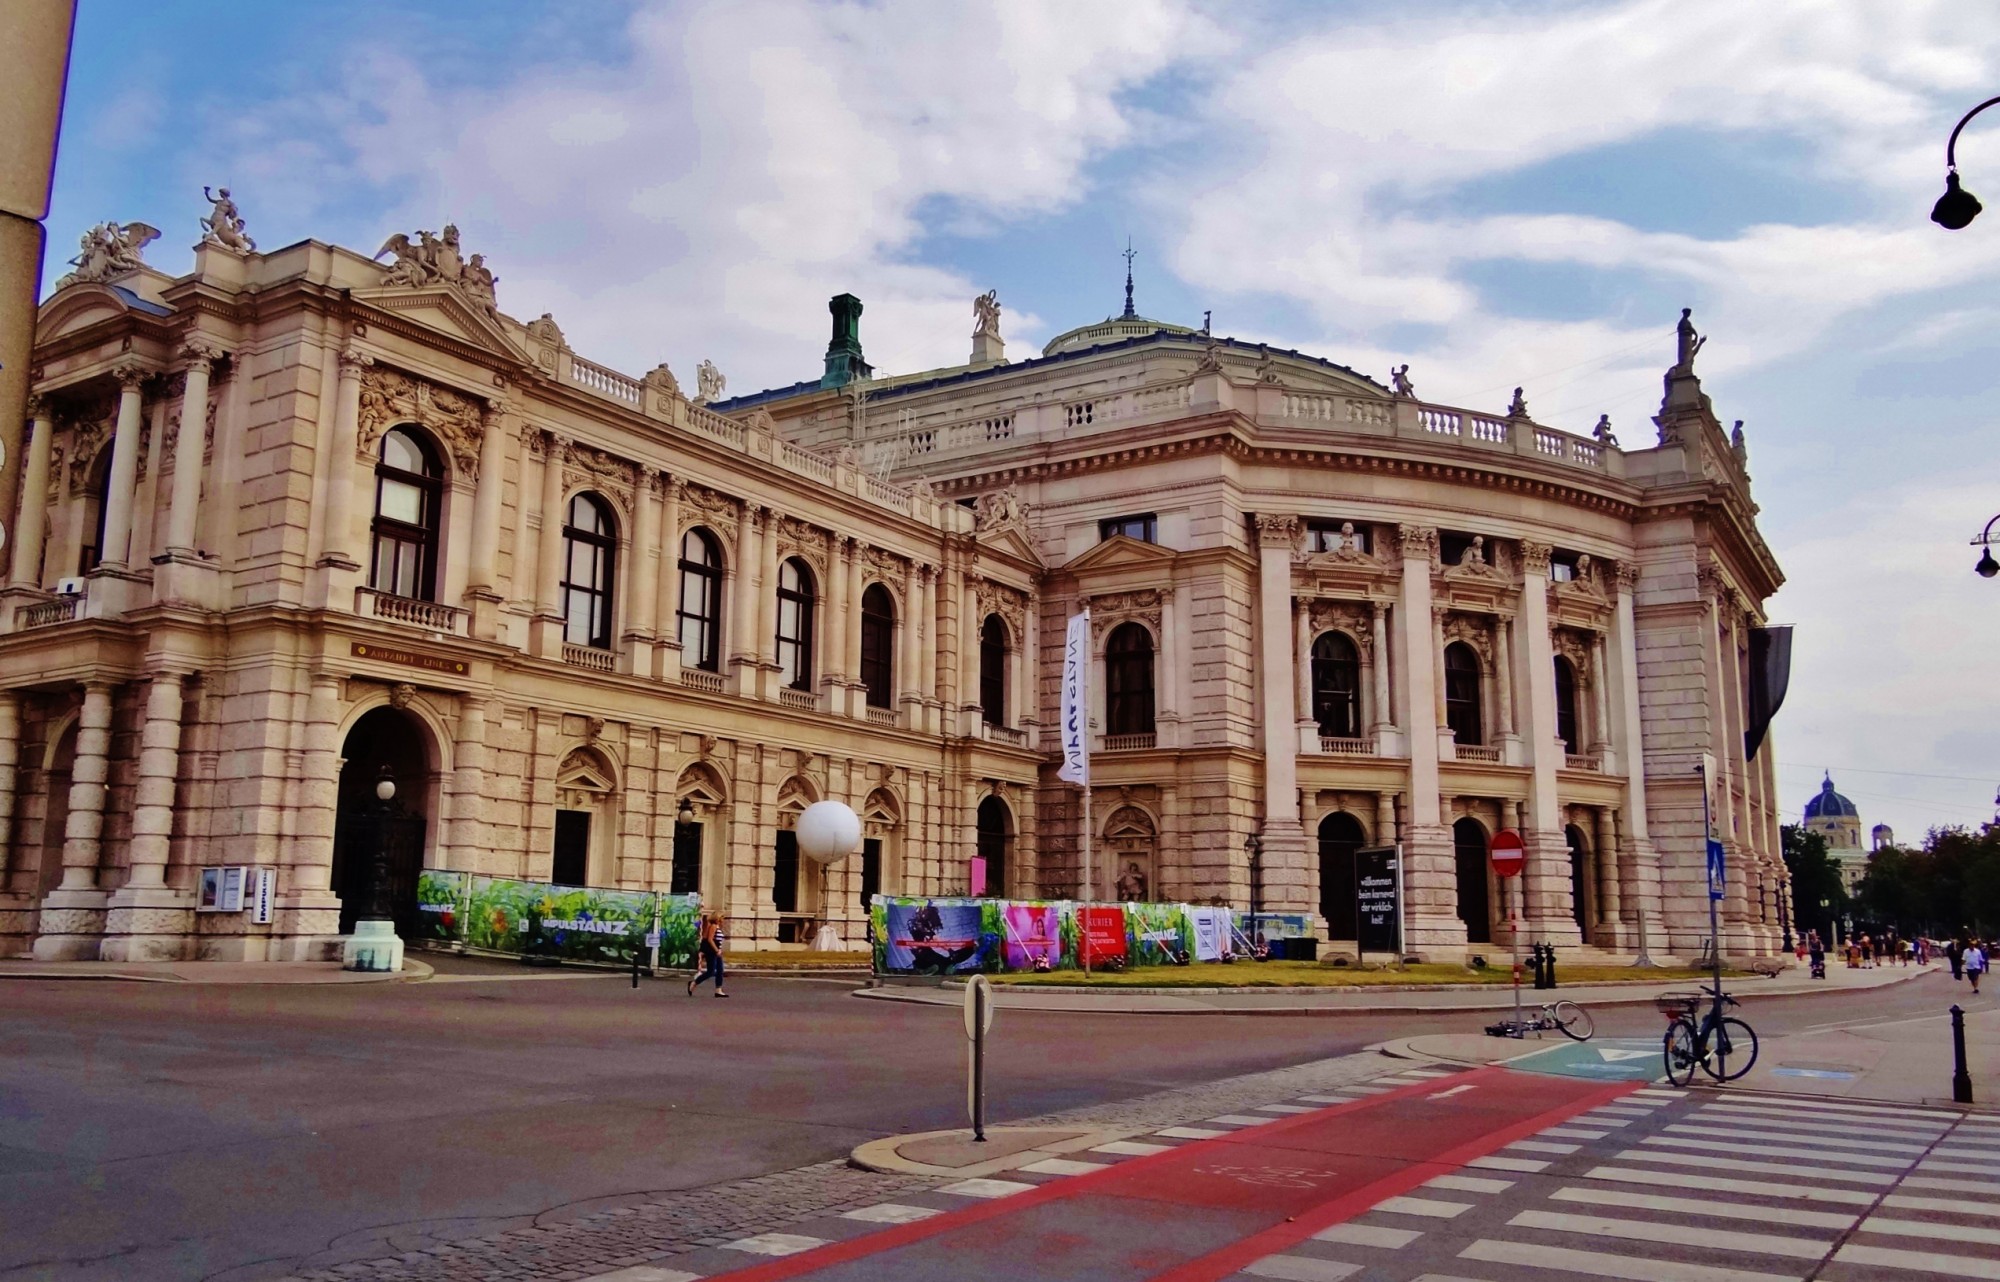 Foto: Burgtheater - Wien (Vienna), Austria